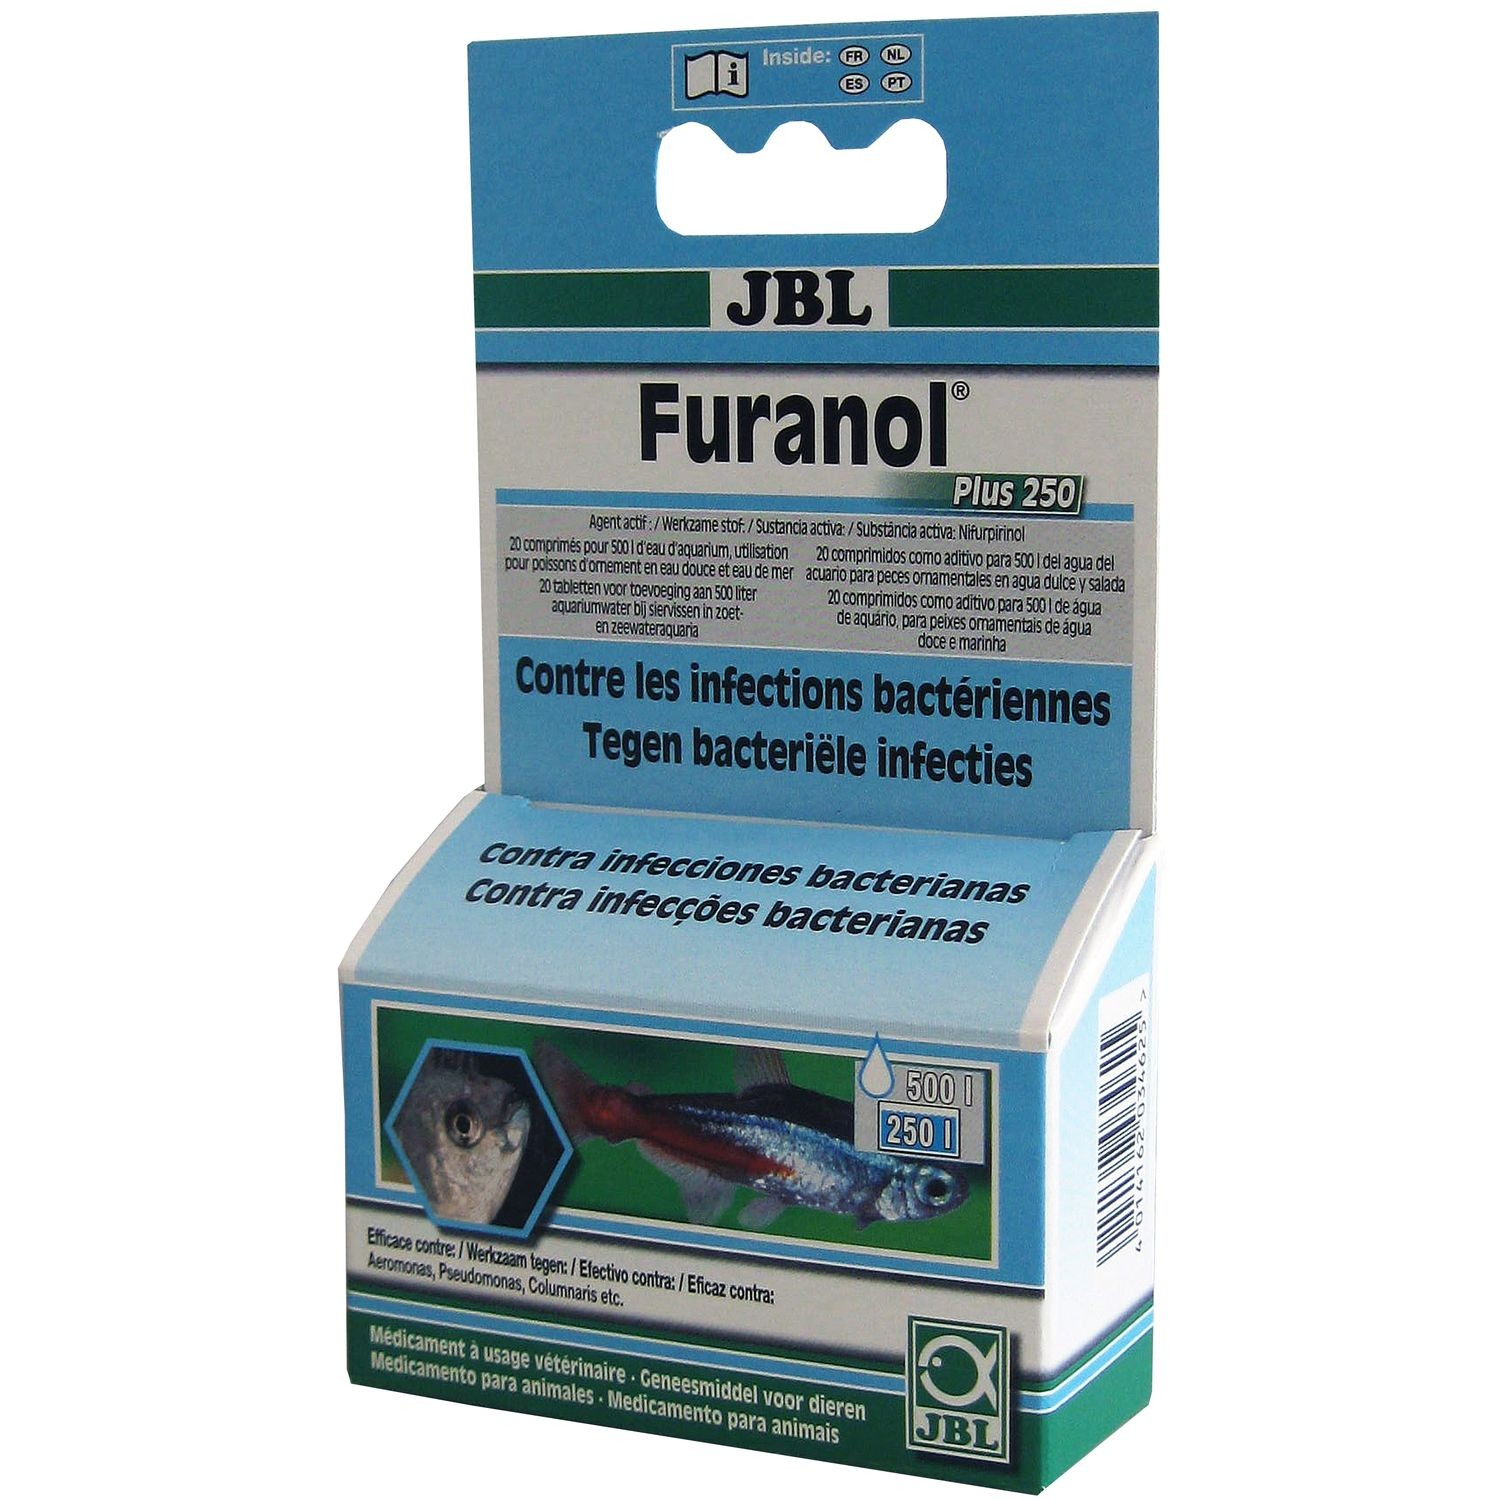 JBL Furanol Plus 250 Contra as infeções bacterianas internas e externas